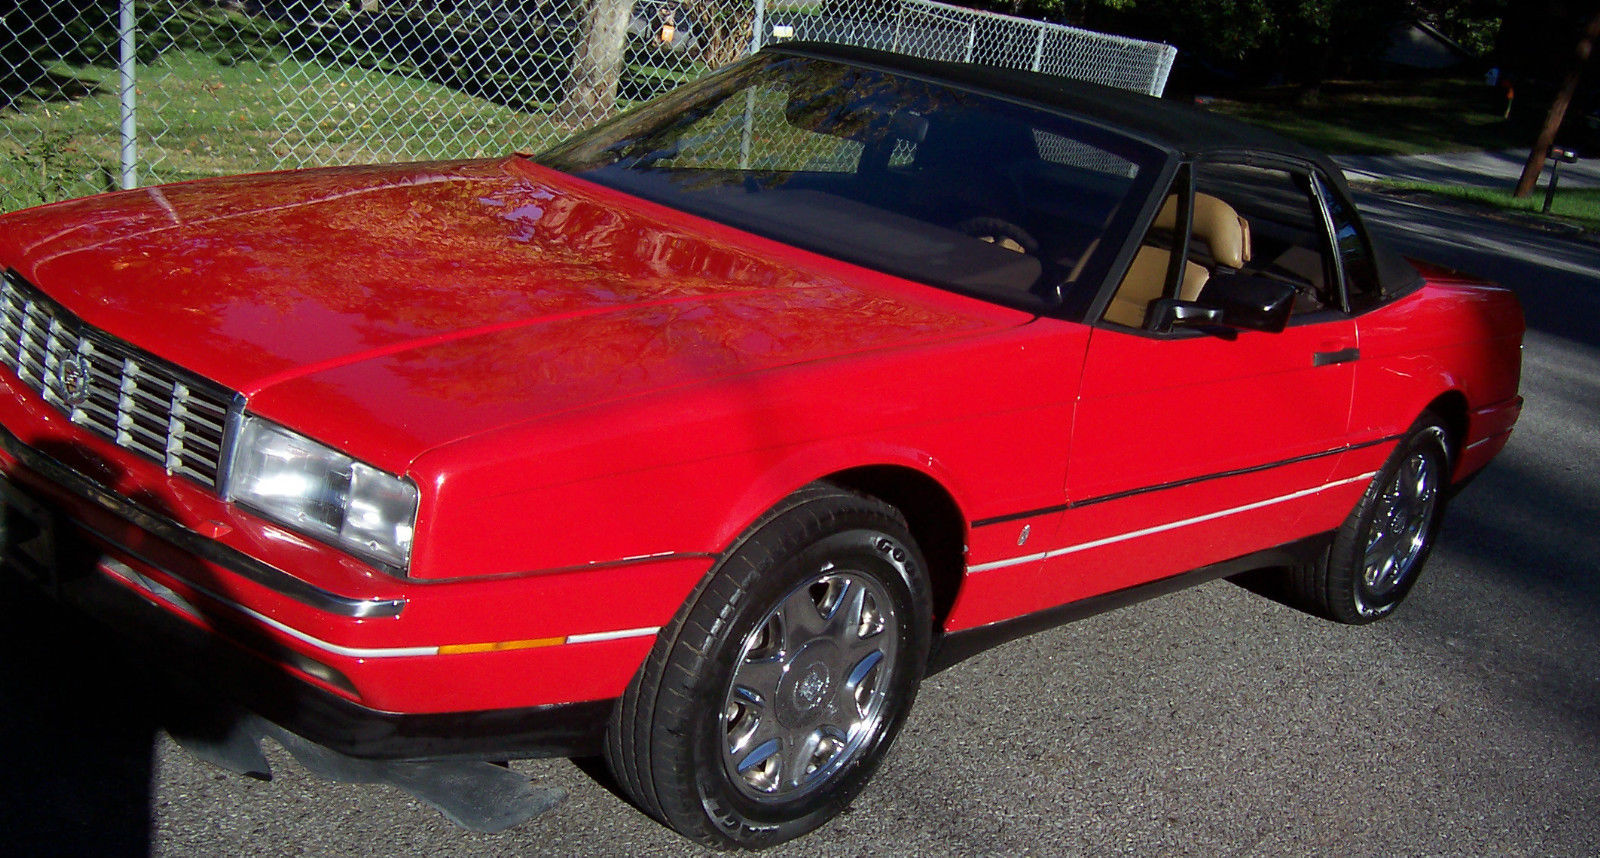 1988 Cadillac Allante